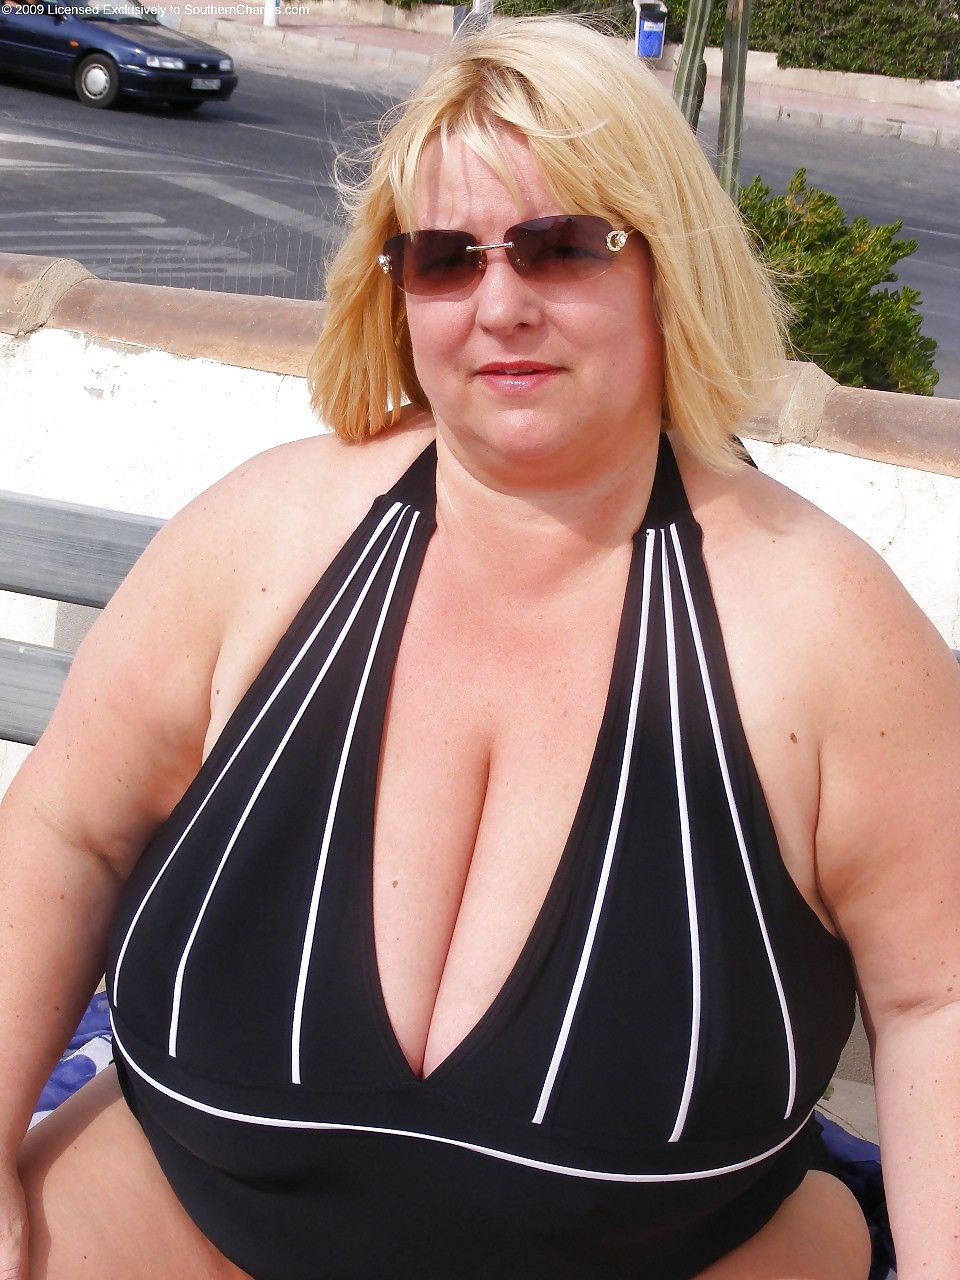 Trajes de baño bikinis sujetadores bbw maduro vestido joven grande enorme - 40
 #11928139